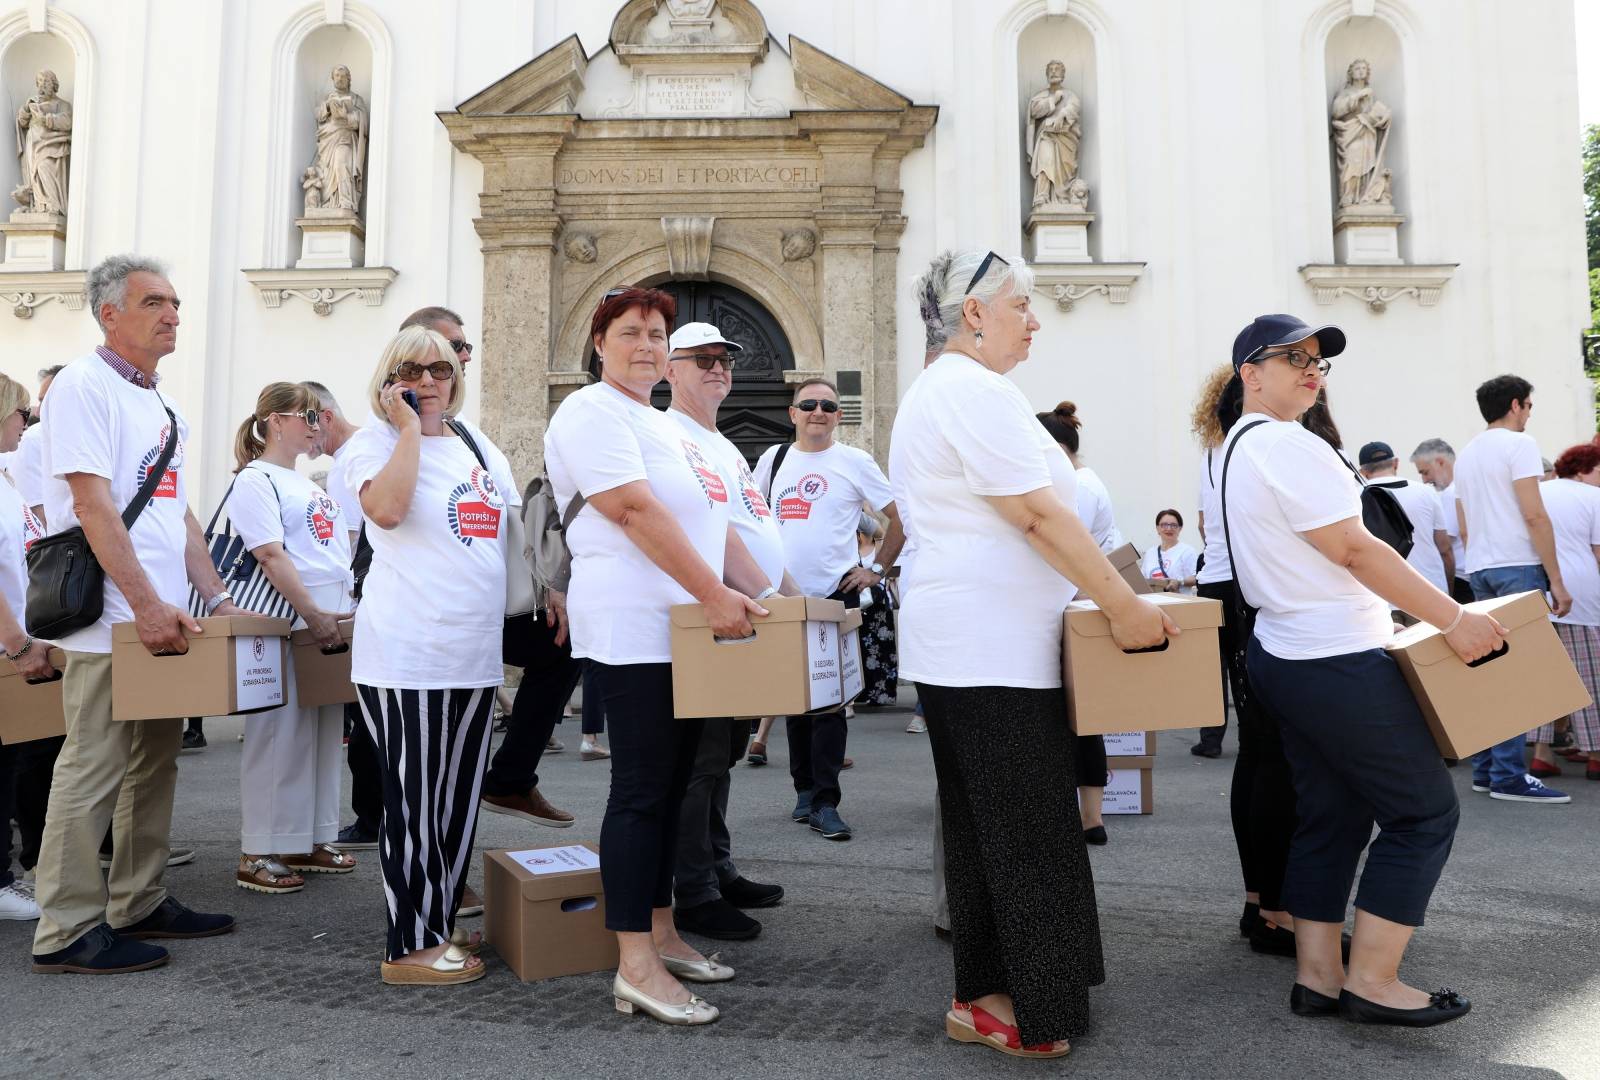 Zagreb: Predaja sakupljenih potpisa Referendumske inicijative â67 je previÅ¡eâ Hrvatskom saboru